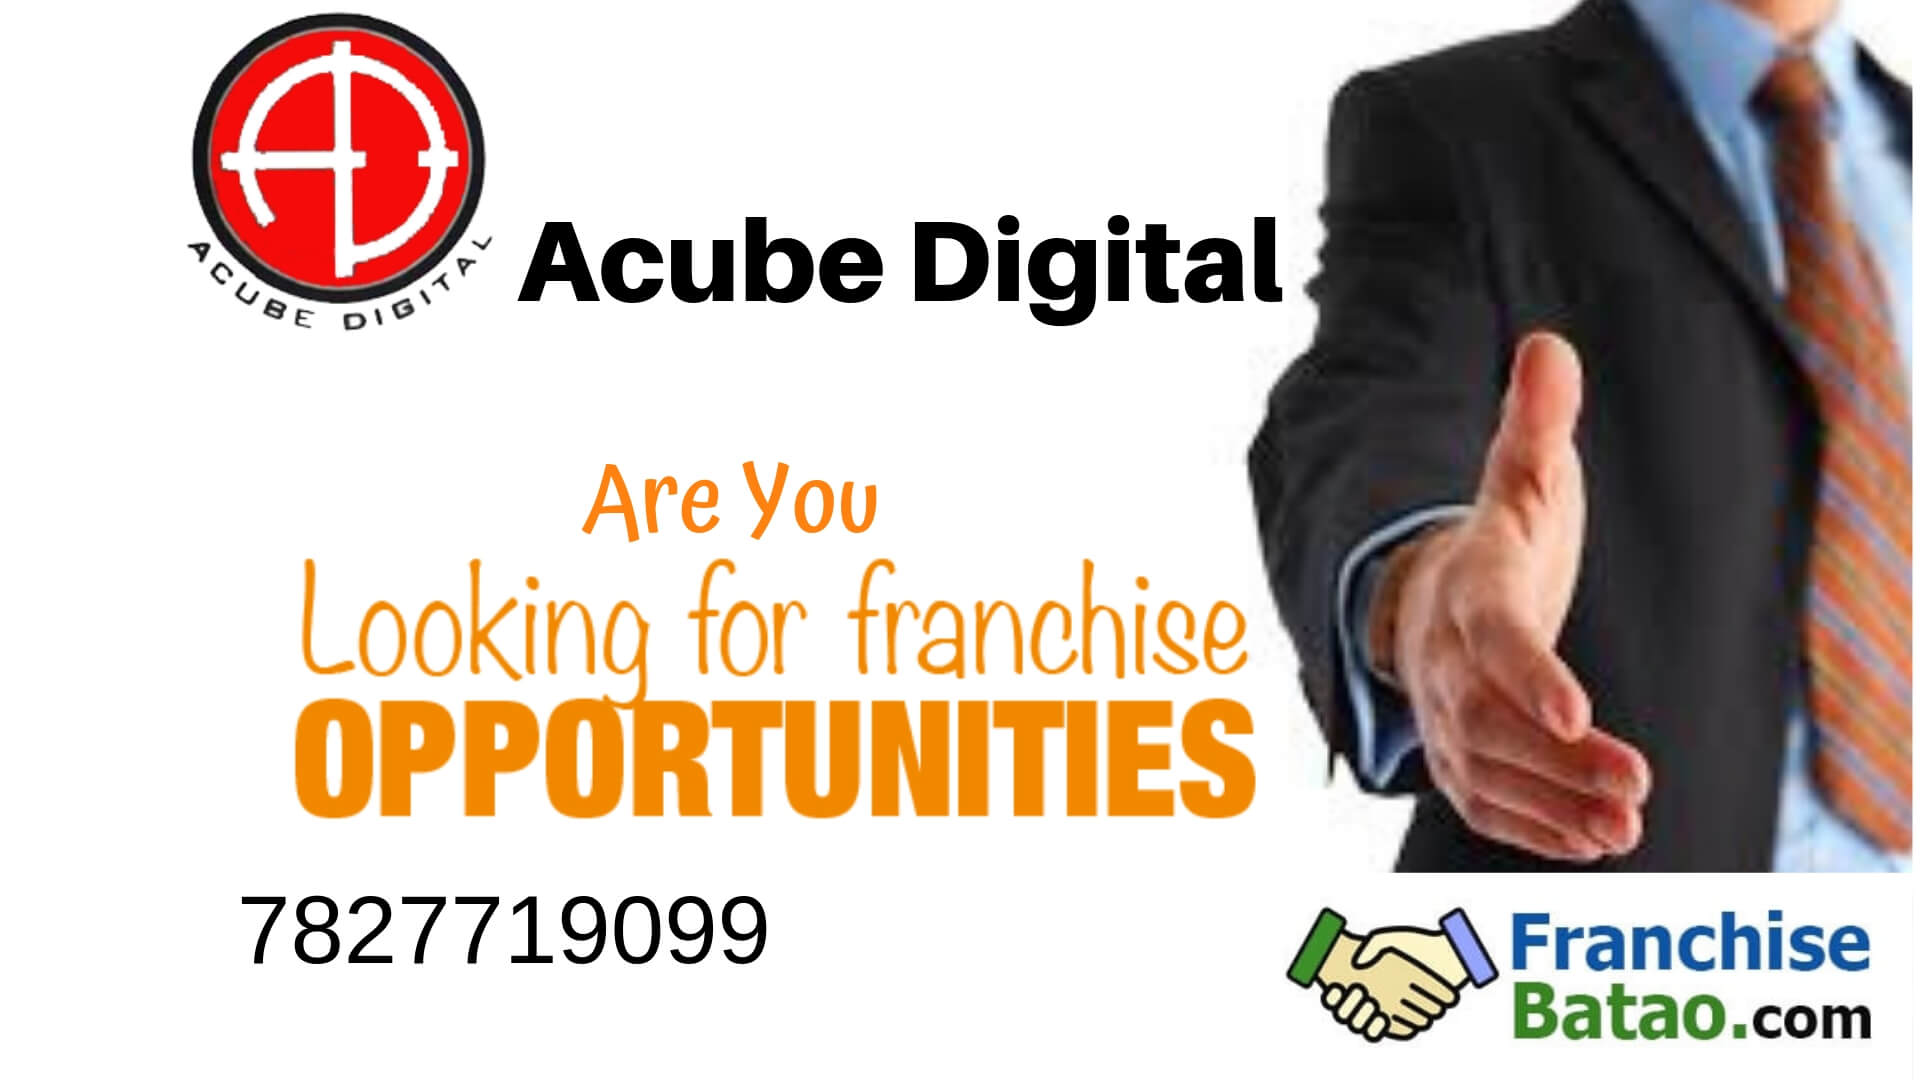 Acube Digital Marketing Franchise